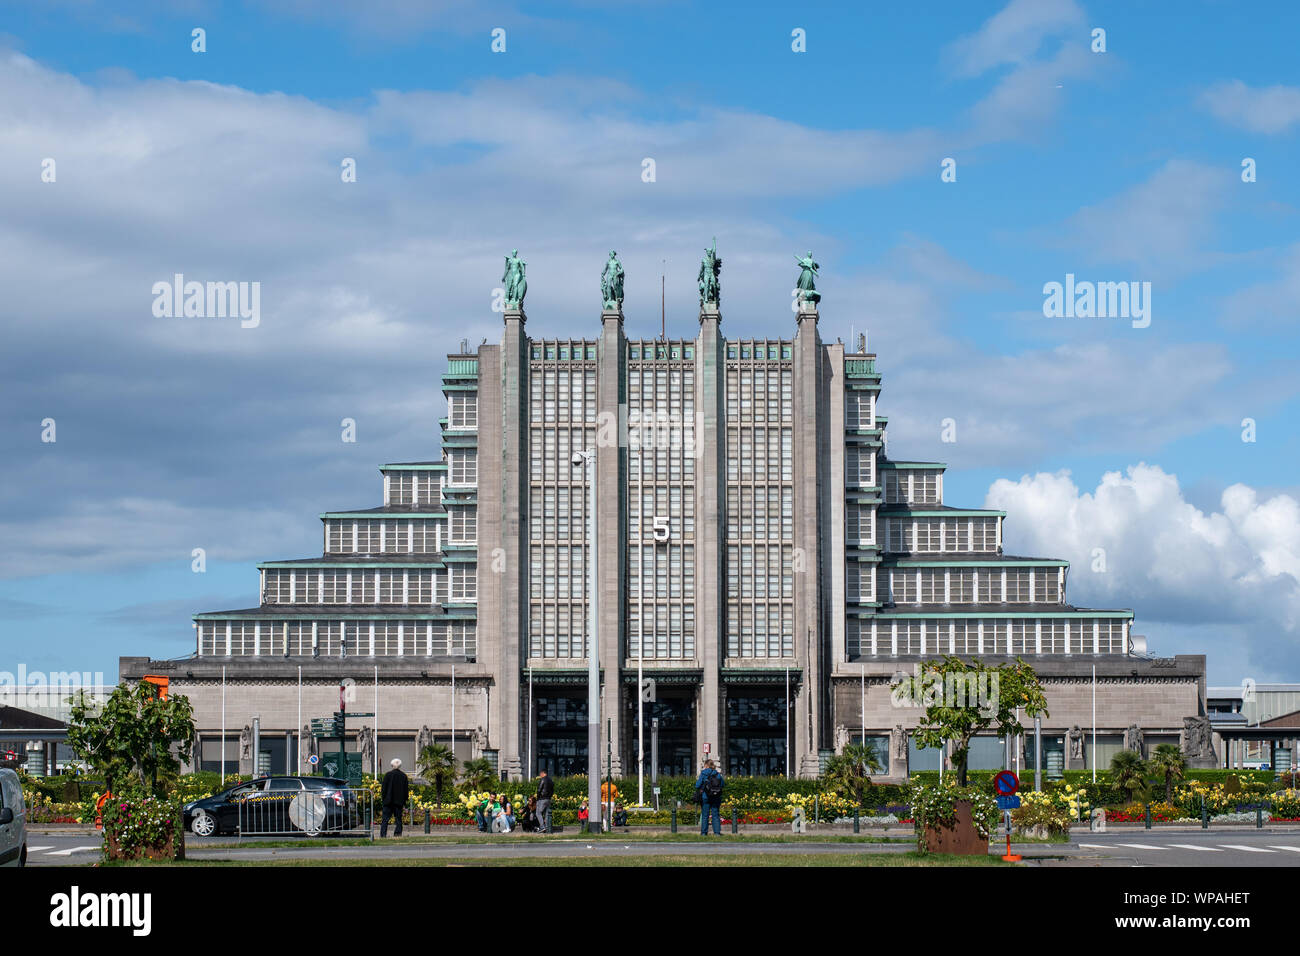 Il Centenario Palace in Heysel, Bruxelles, Belgio è stato uno dei punti salienti del 1935 World Exposition, e successiva Expo 1958. Foto Stock